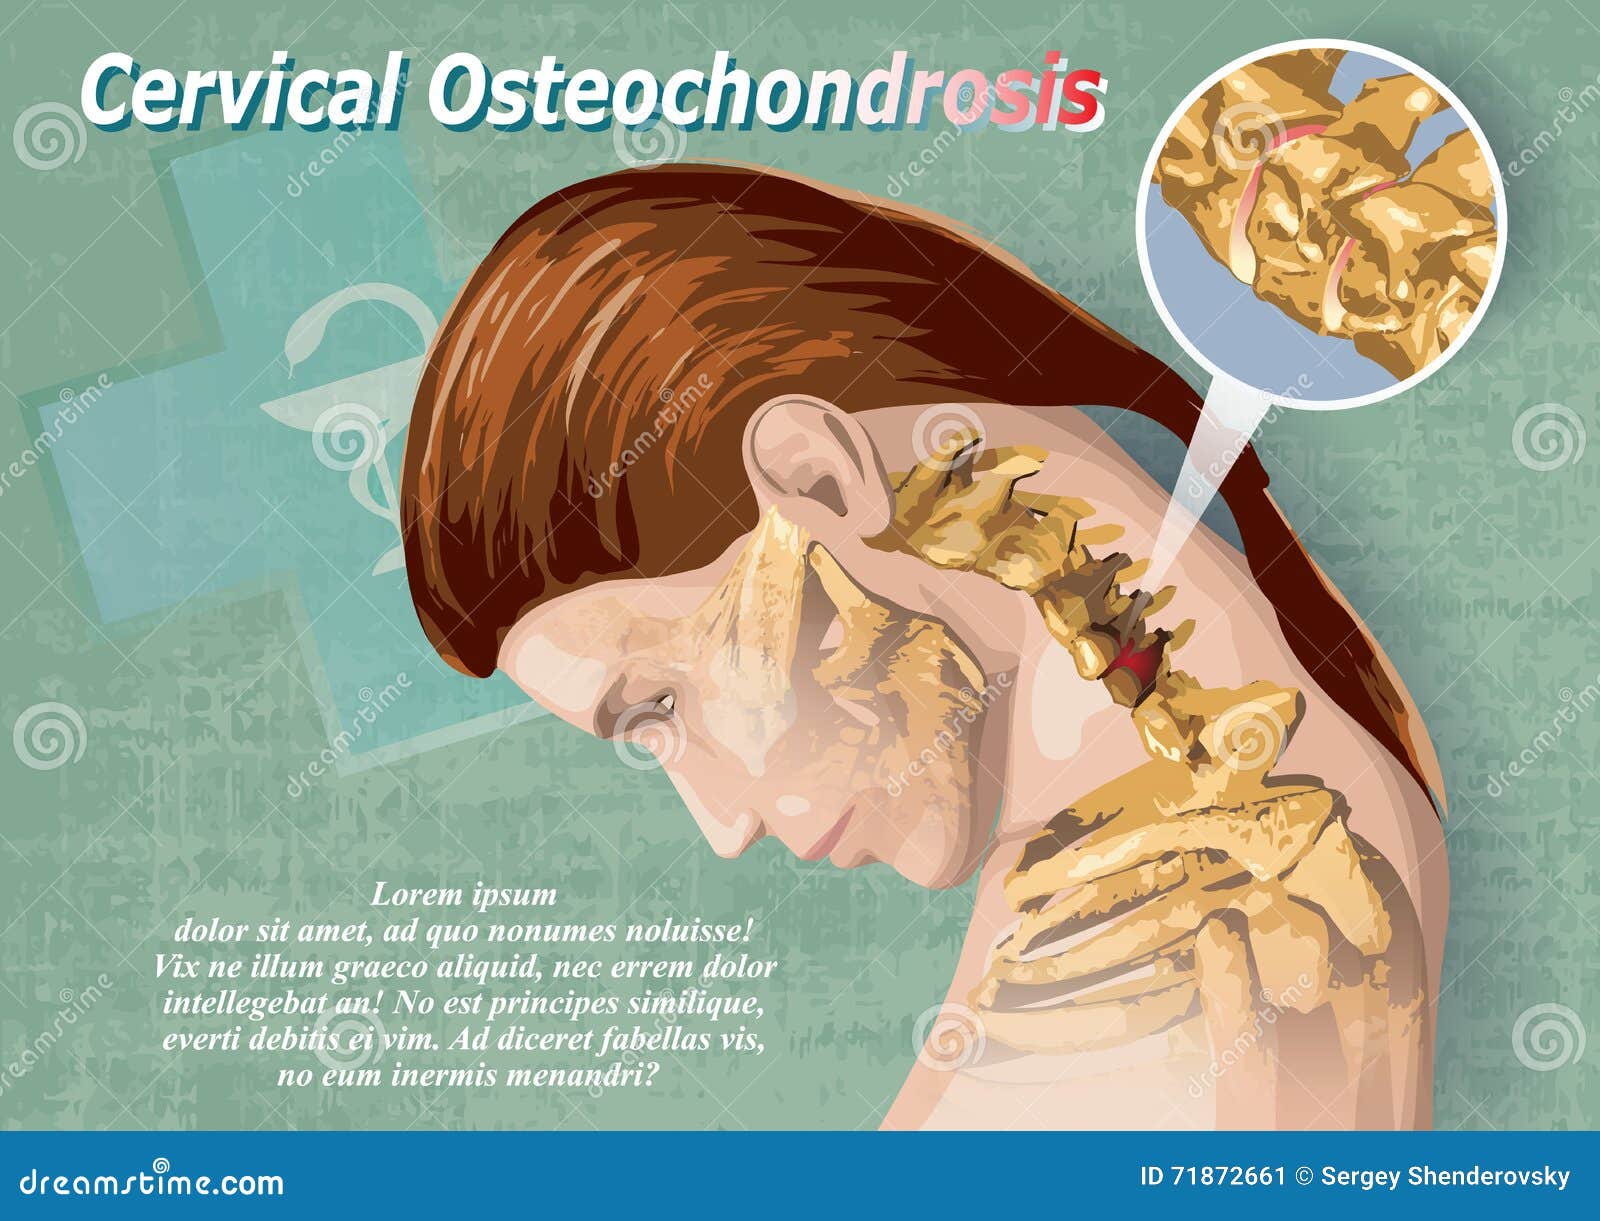 széles körben elterjedt osteochondrosis